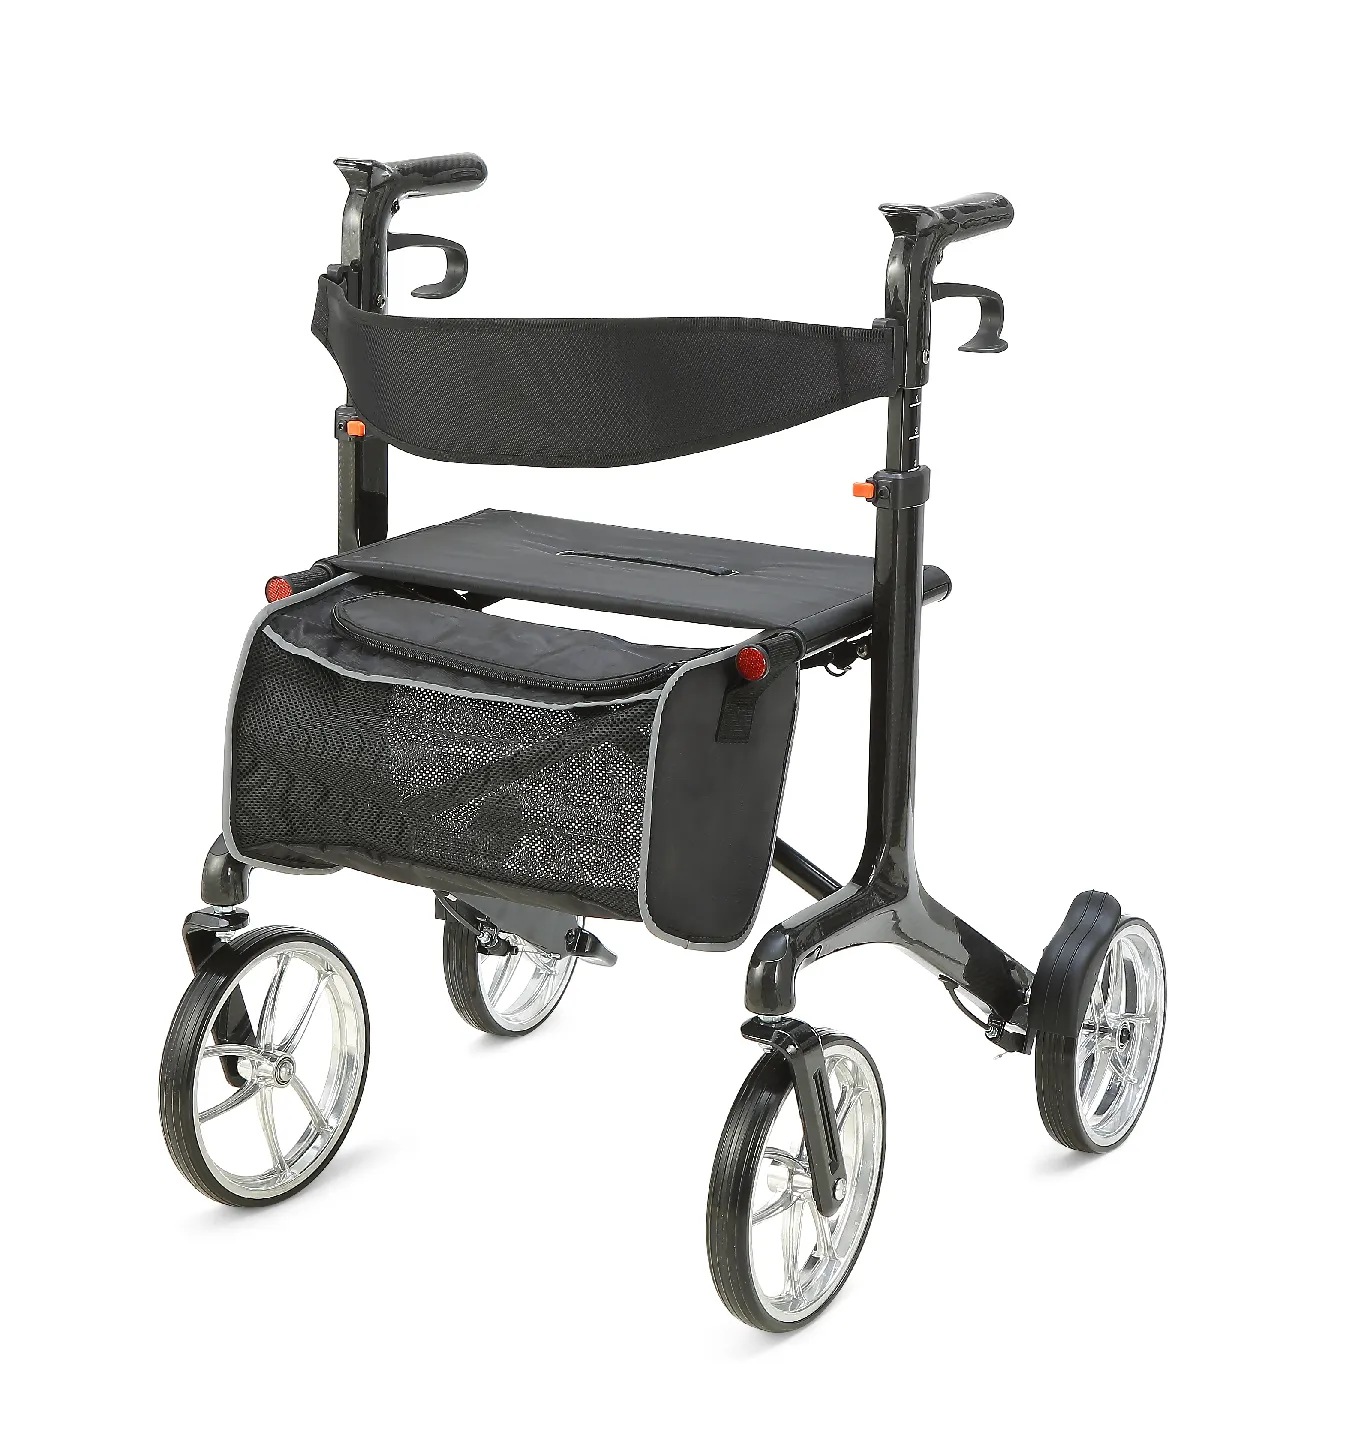 Foshan HCT-9266A Neues Design Mobilitätshilfen leichtes Medizingerät Vierrädrig für Senioren klappbarer Walker mit Sitz